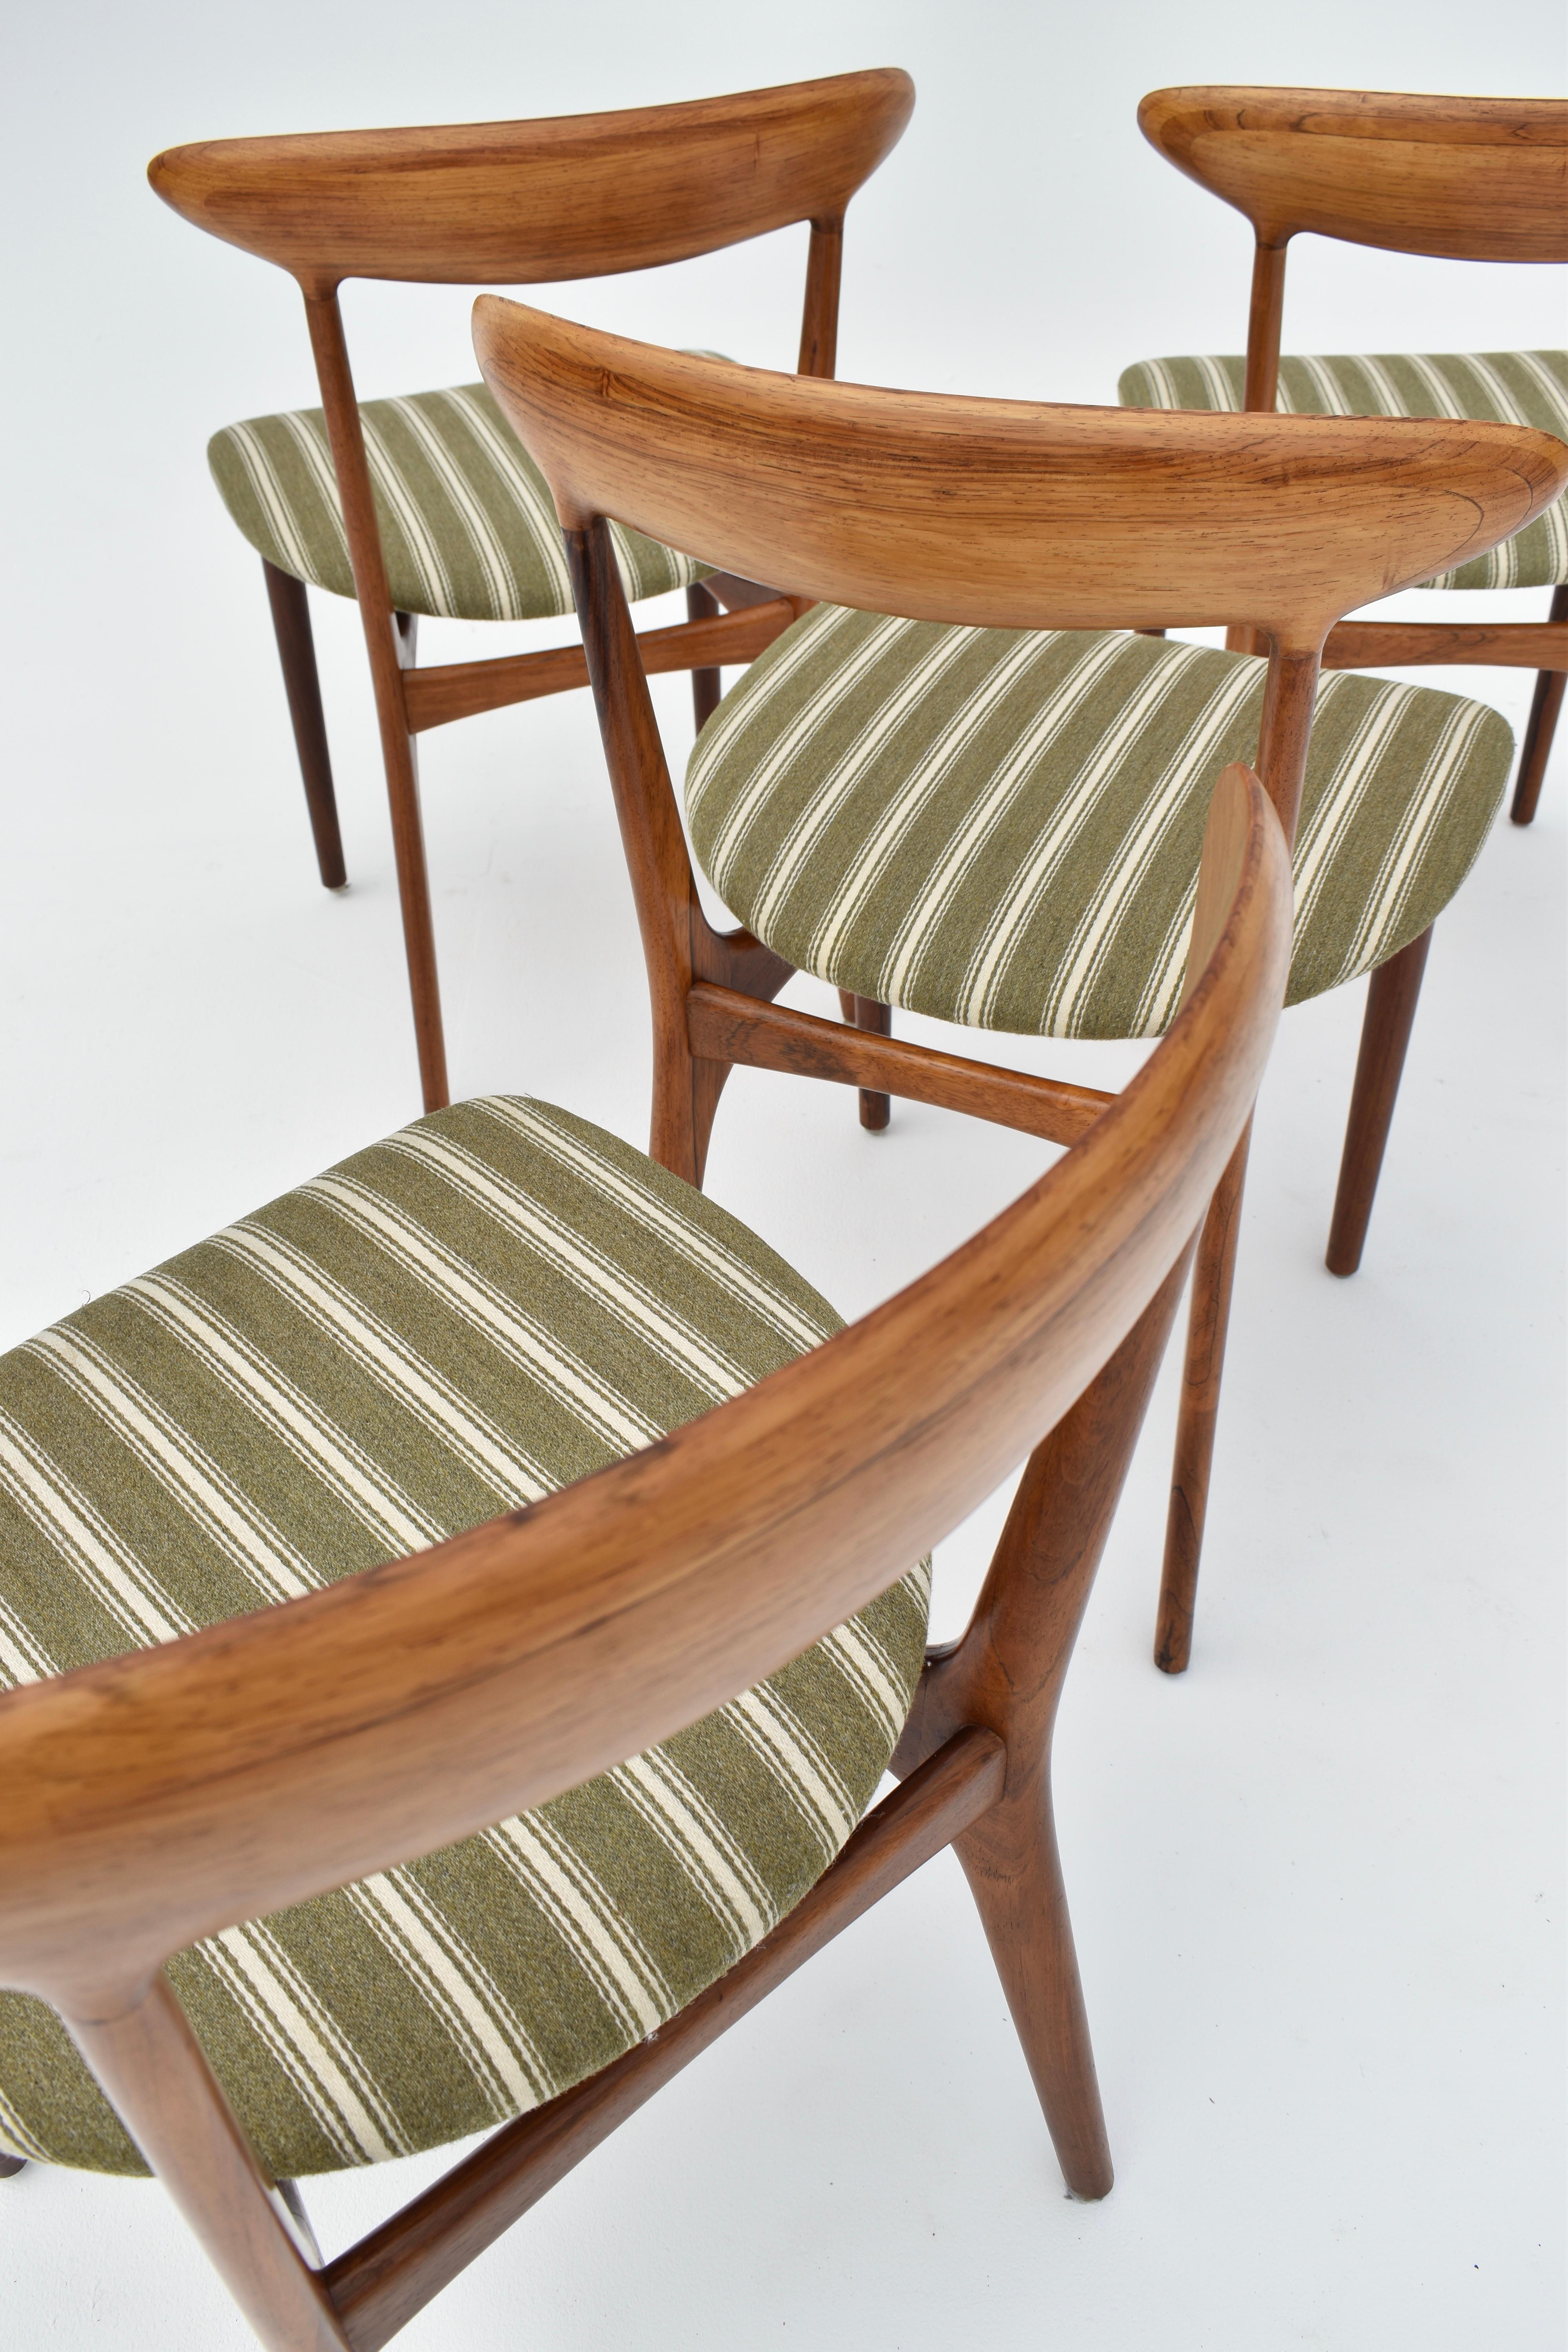 Chaises de salle à manger exquises et rarement vues, conçues en 1955 par Kurt Østervig pour Brande Møbelindustri.

Un design très joli et élégant avec une merveilleuse forme organique. Cet ensemble de quatre est un véritable ensemble avec des